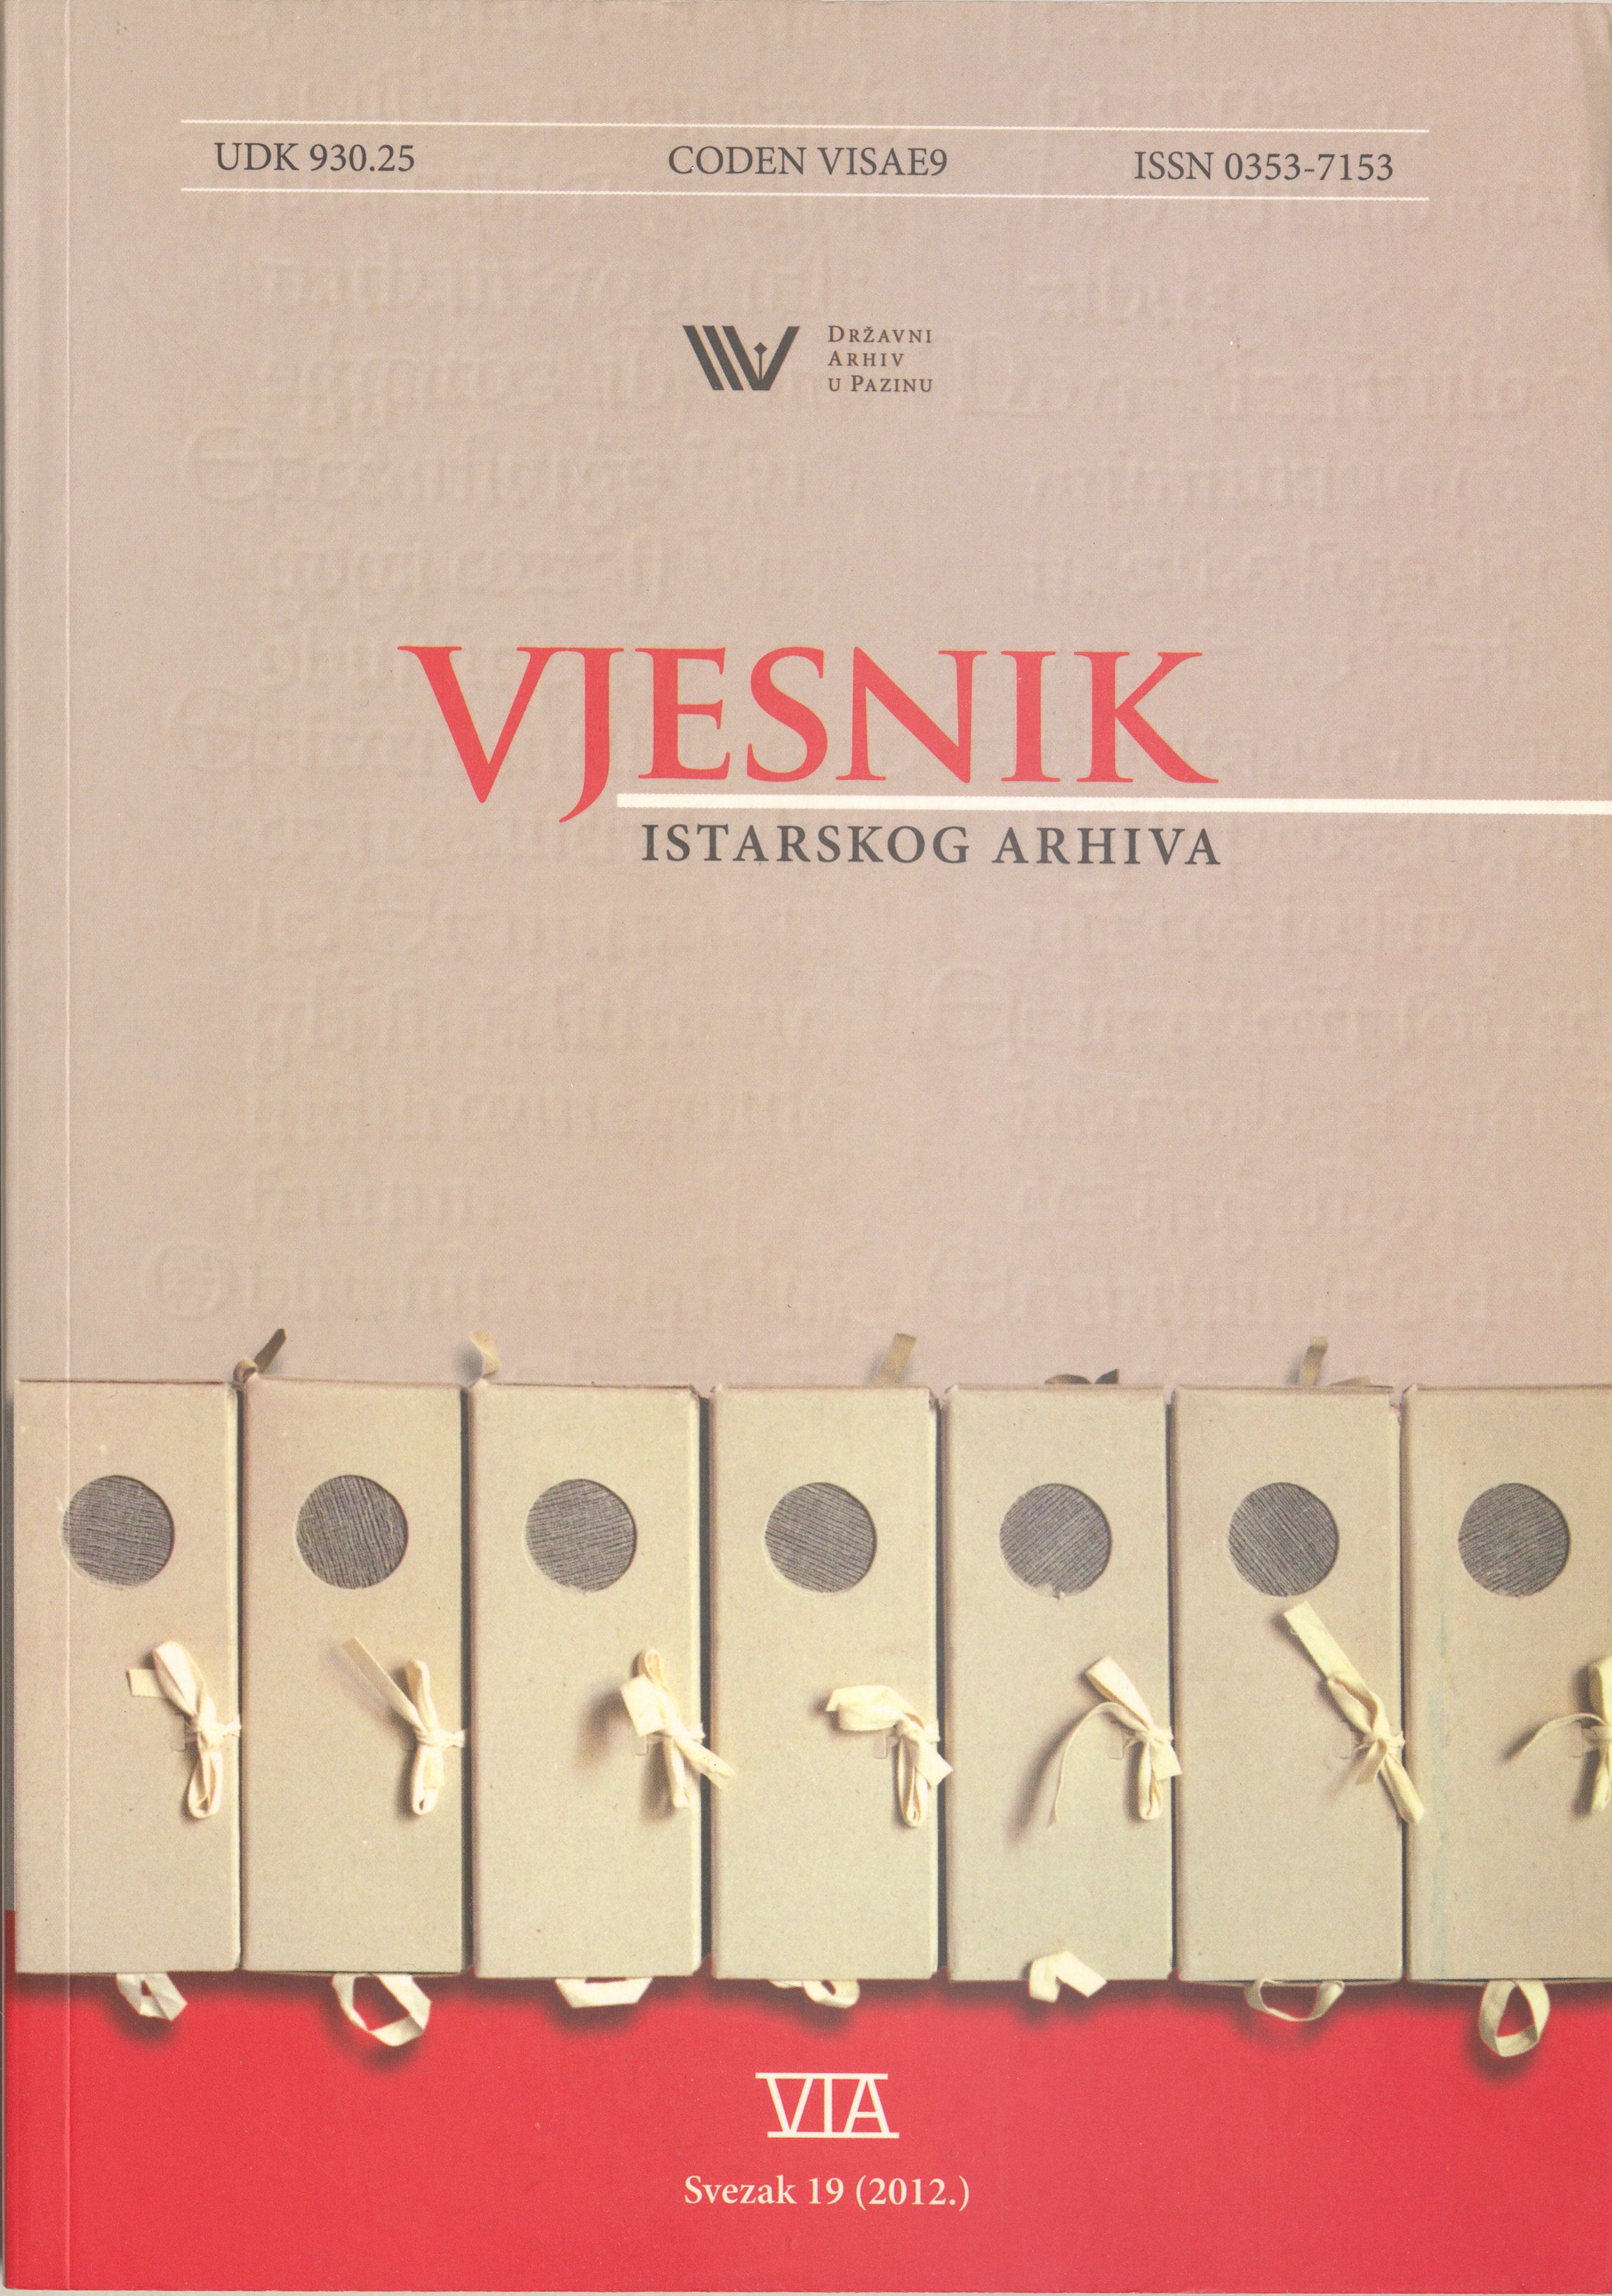 					View Vjesnik istarskog arhiva vol. 19 (2012)
				